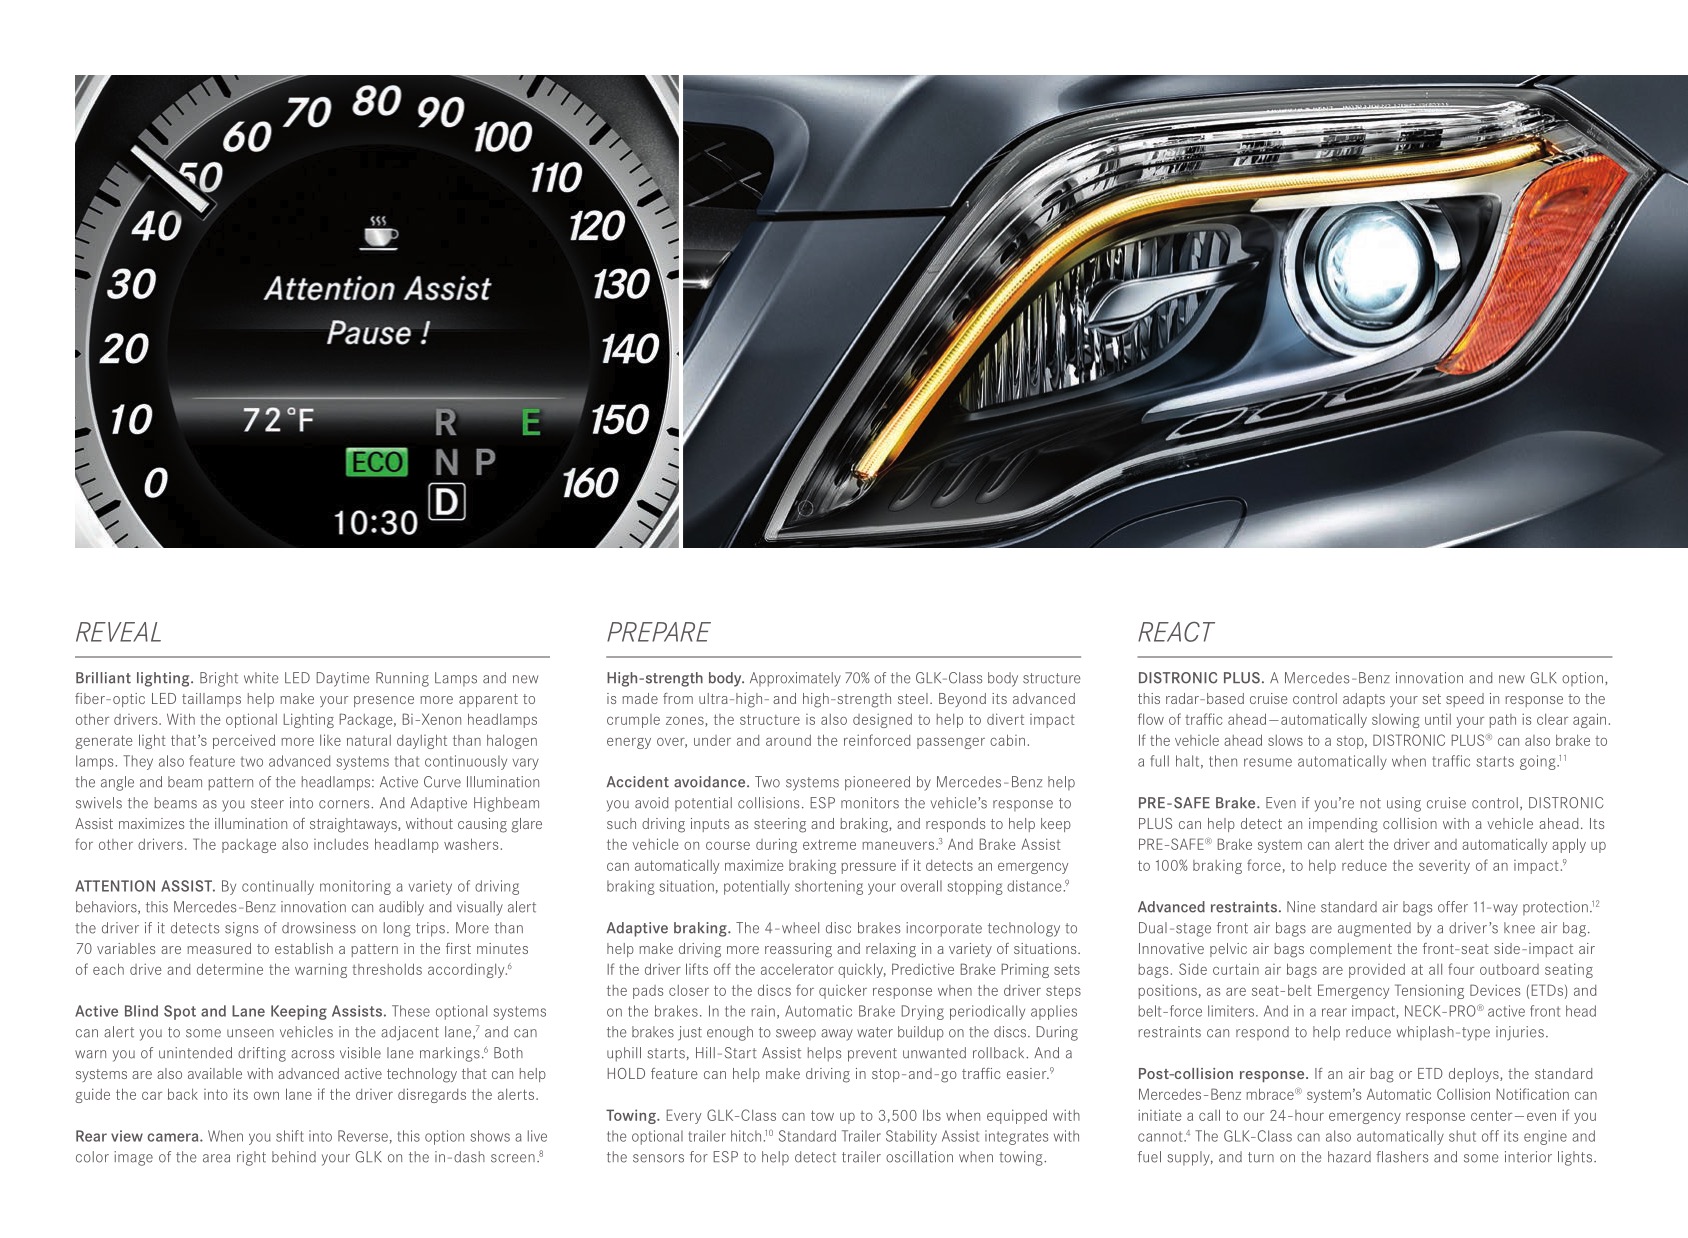 2013 Mercedes-Benz GLK-Class Brochure Page 5